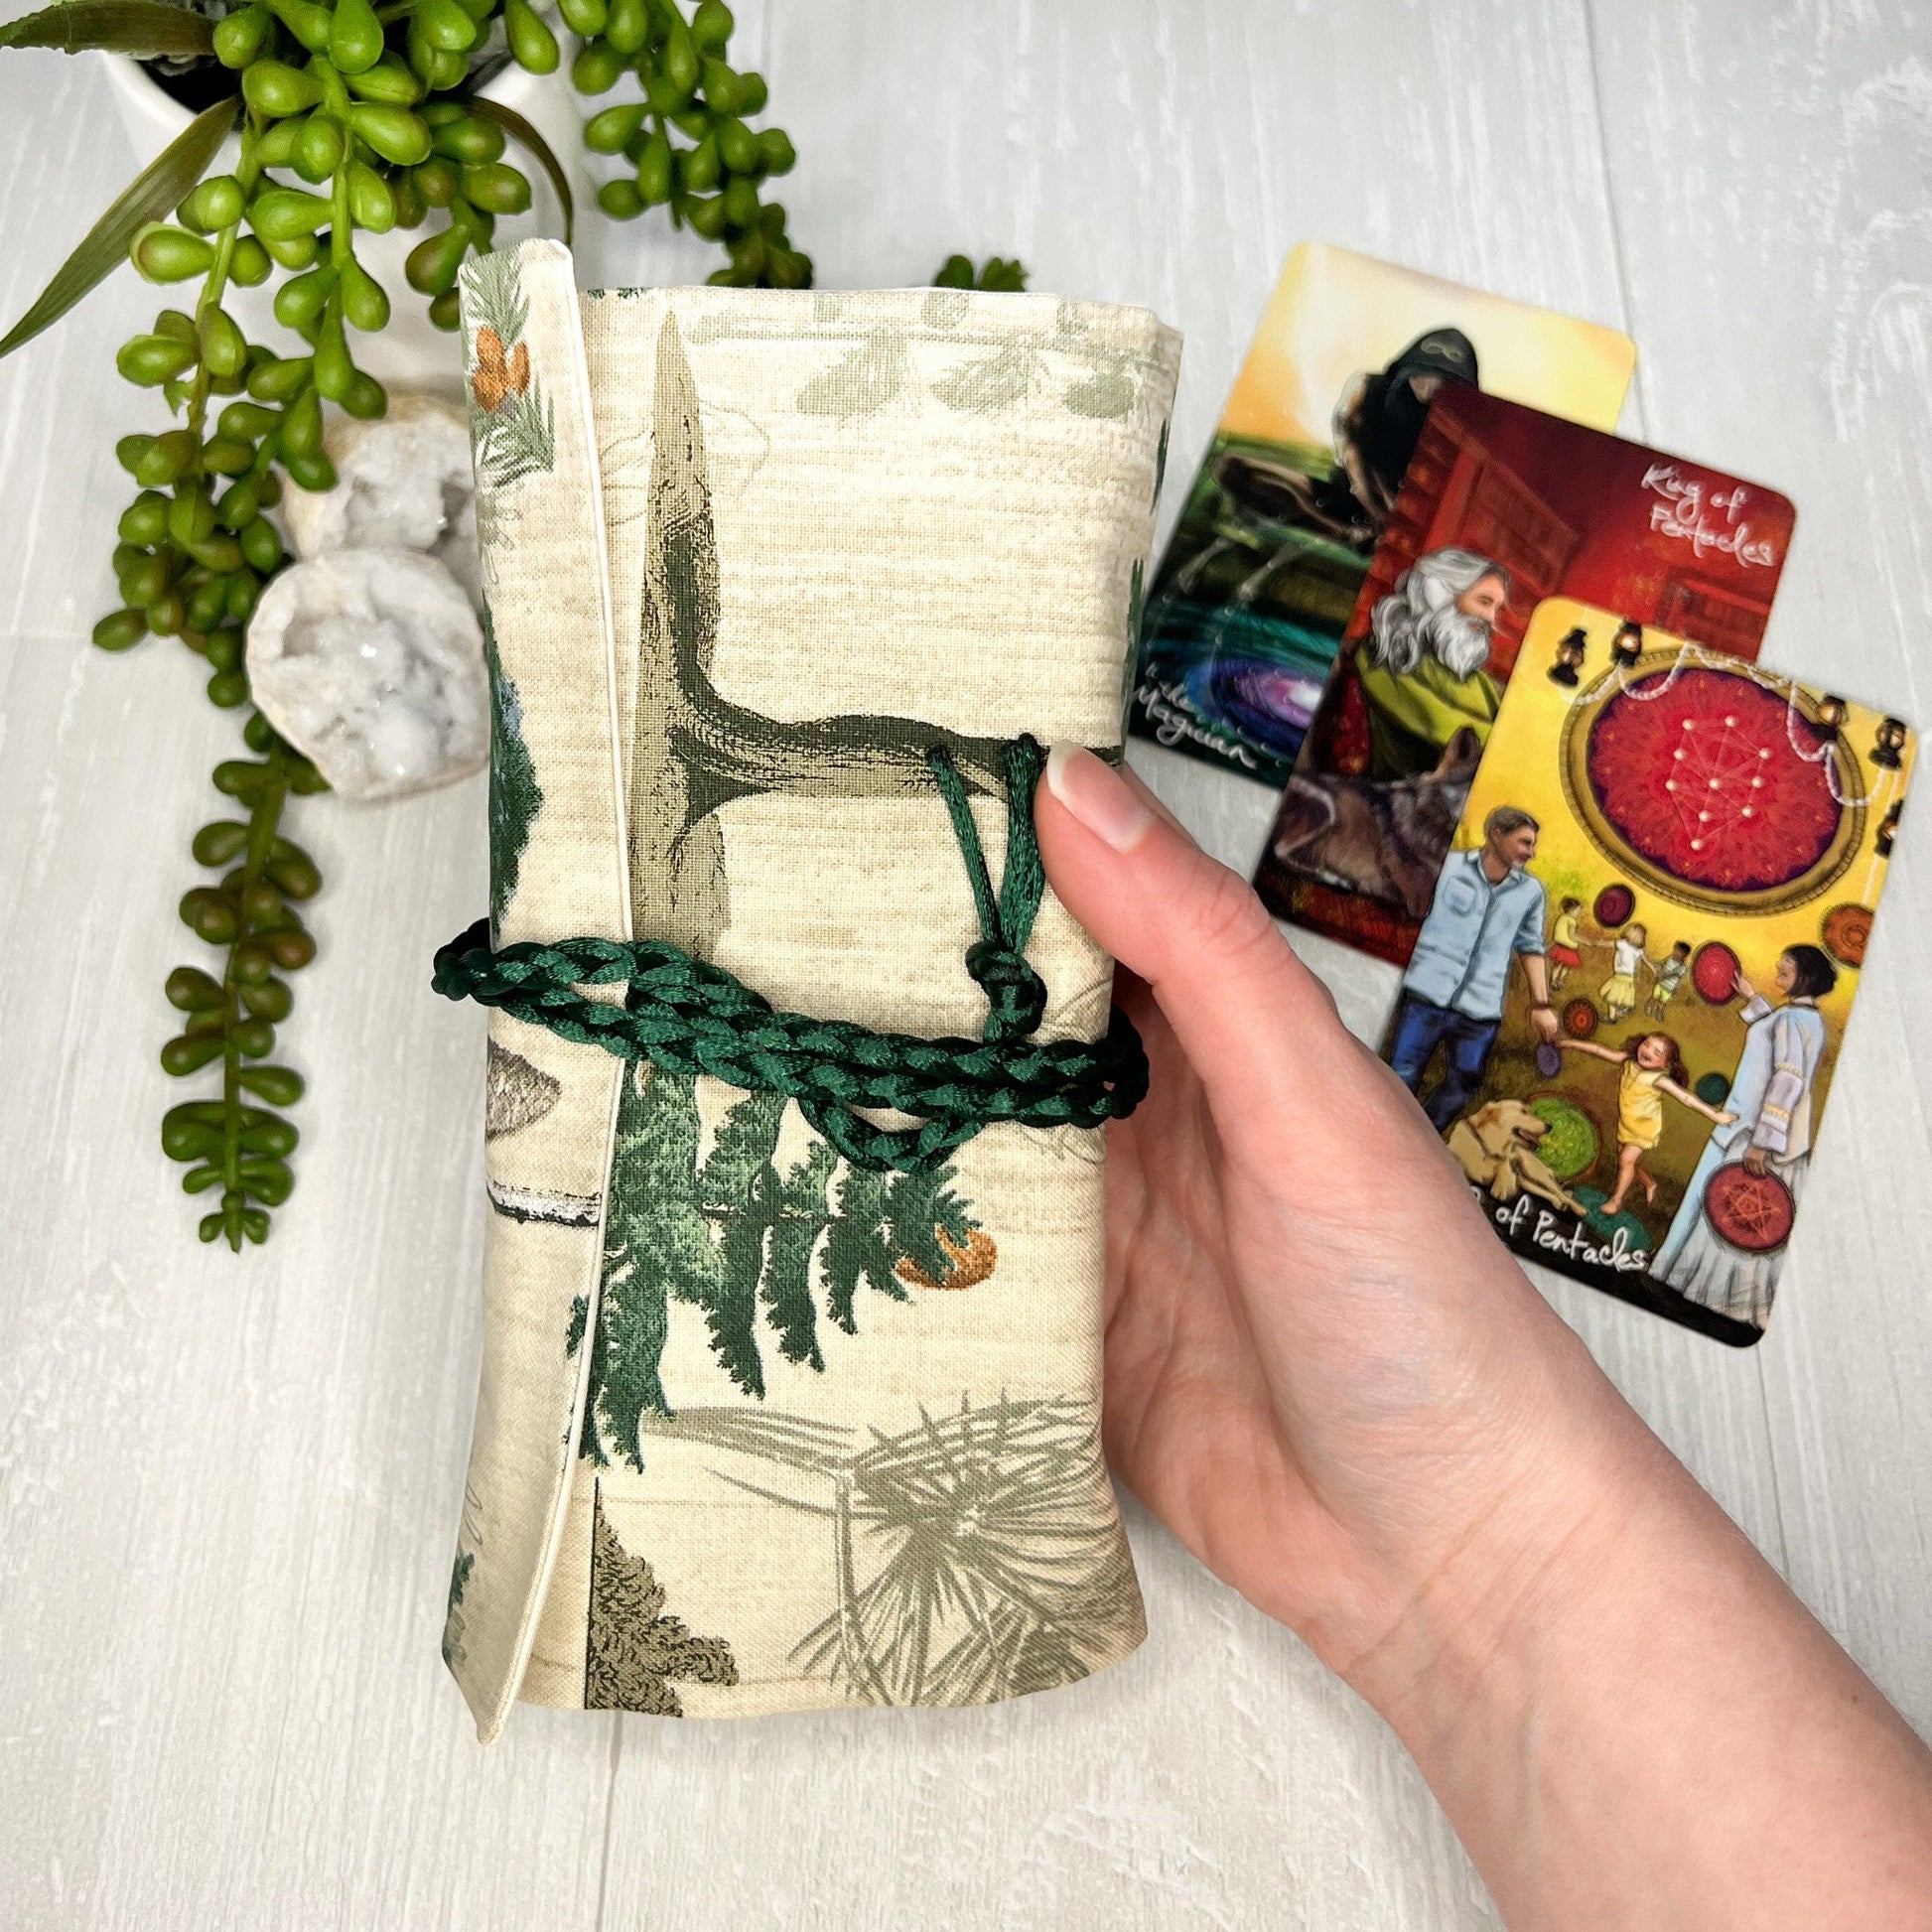 Tree Tarot Wrap, Foresty Green Tarot Fold Over Pouch, Tarot Supplies & Accessories, Tarot Card Holder, Divination Tools, Tarot Reader Gift